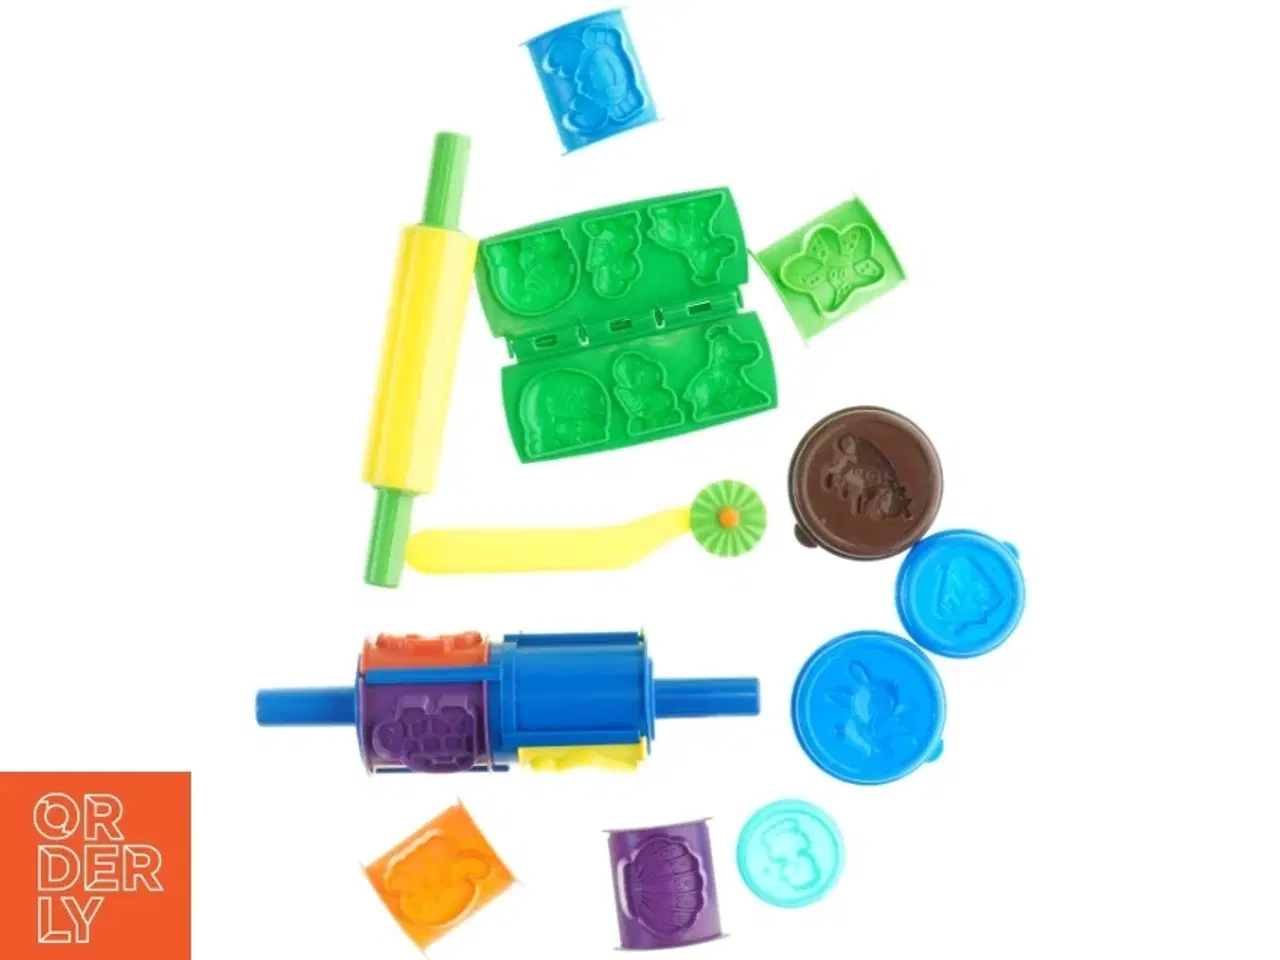 Billede 3 - Play-Doh modellervoks sæt fra Play-Doh (str. 23 cm)